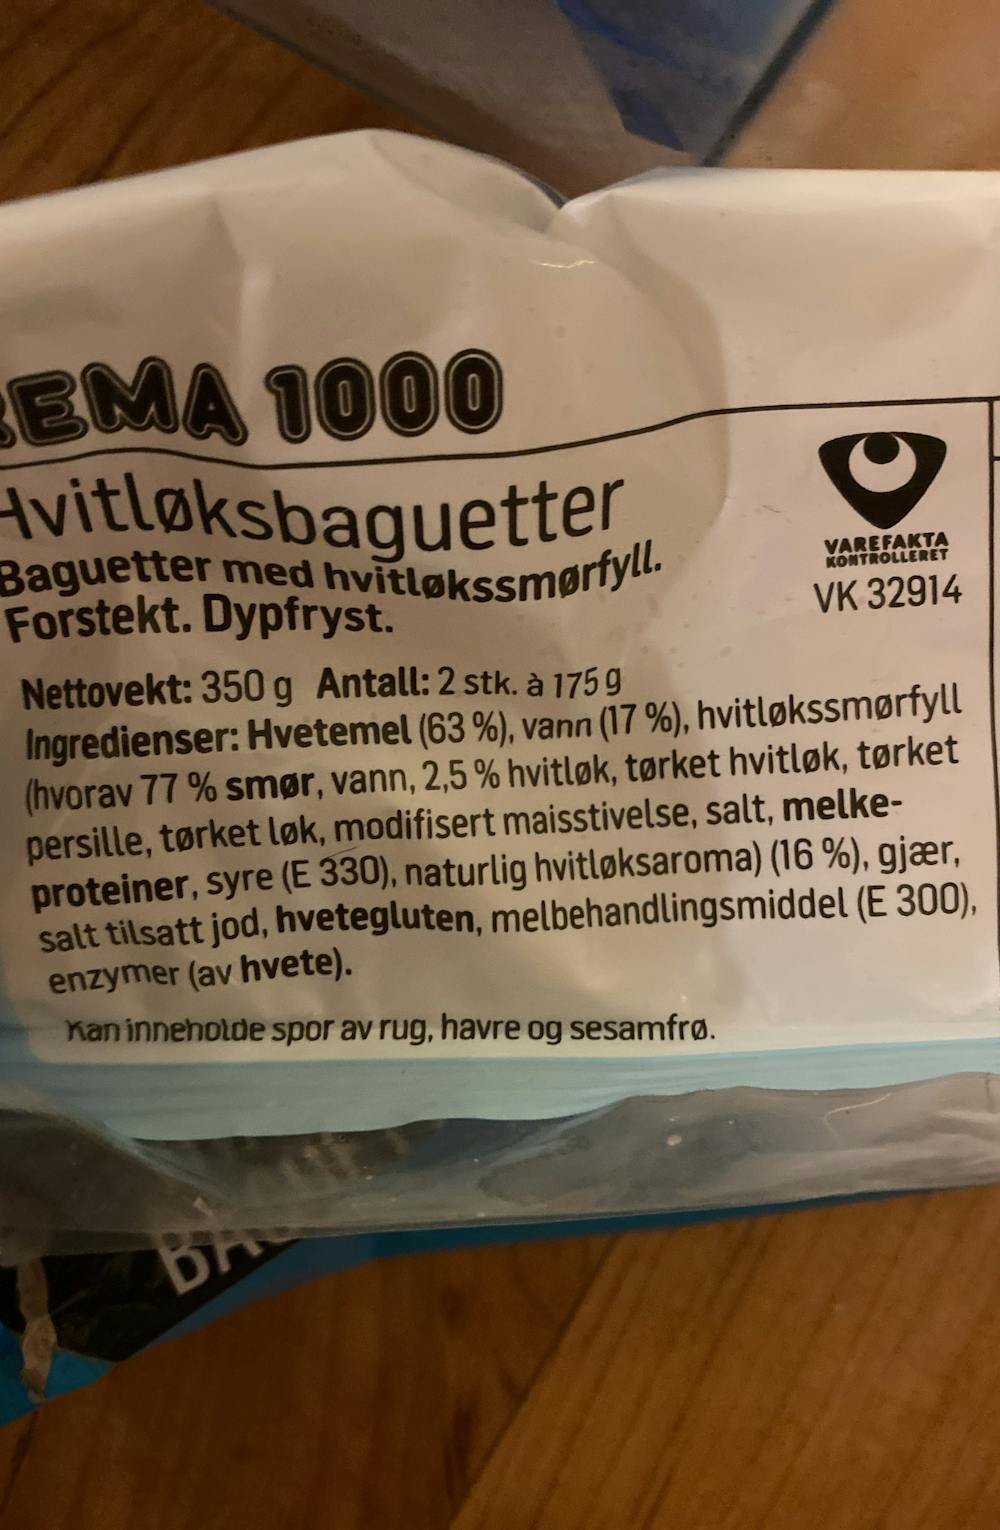 Ingredienslisten til Rema1000 Hvitløksbaguetter